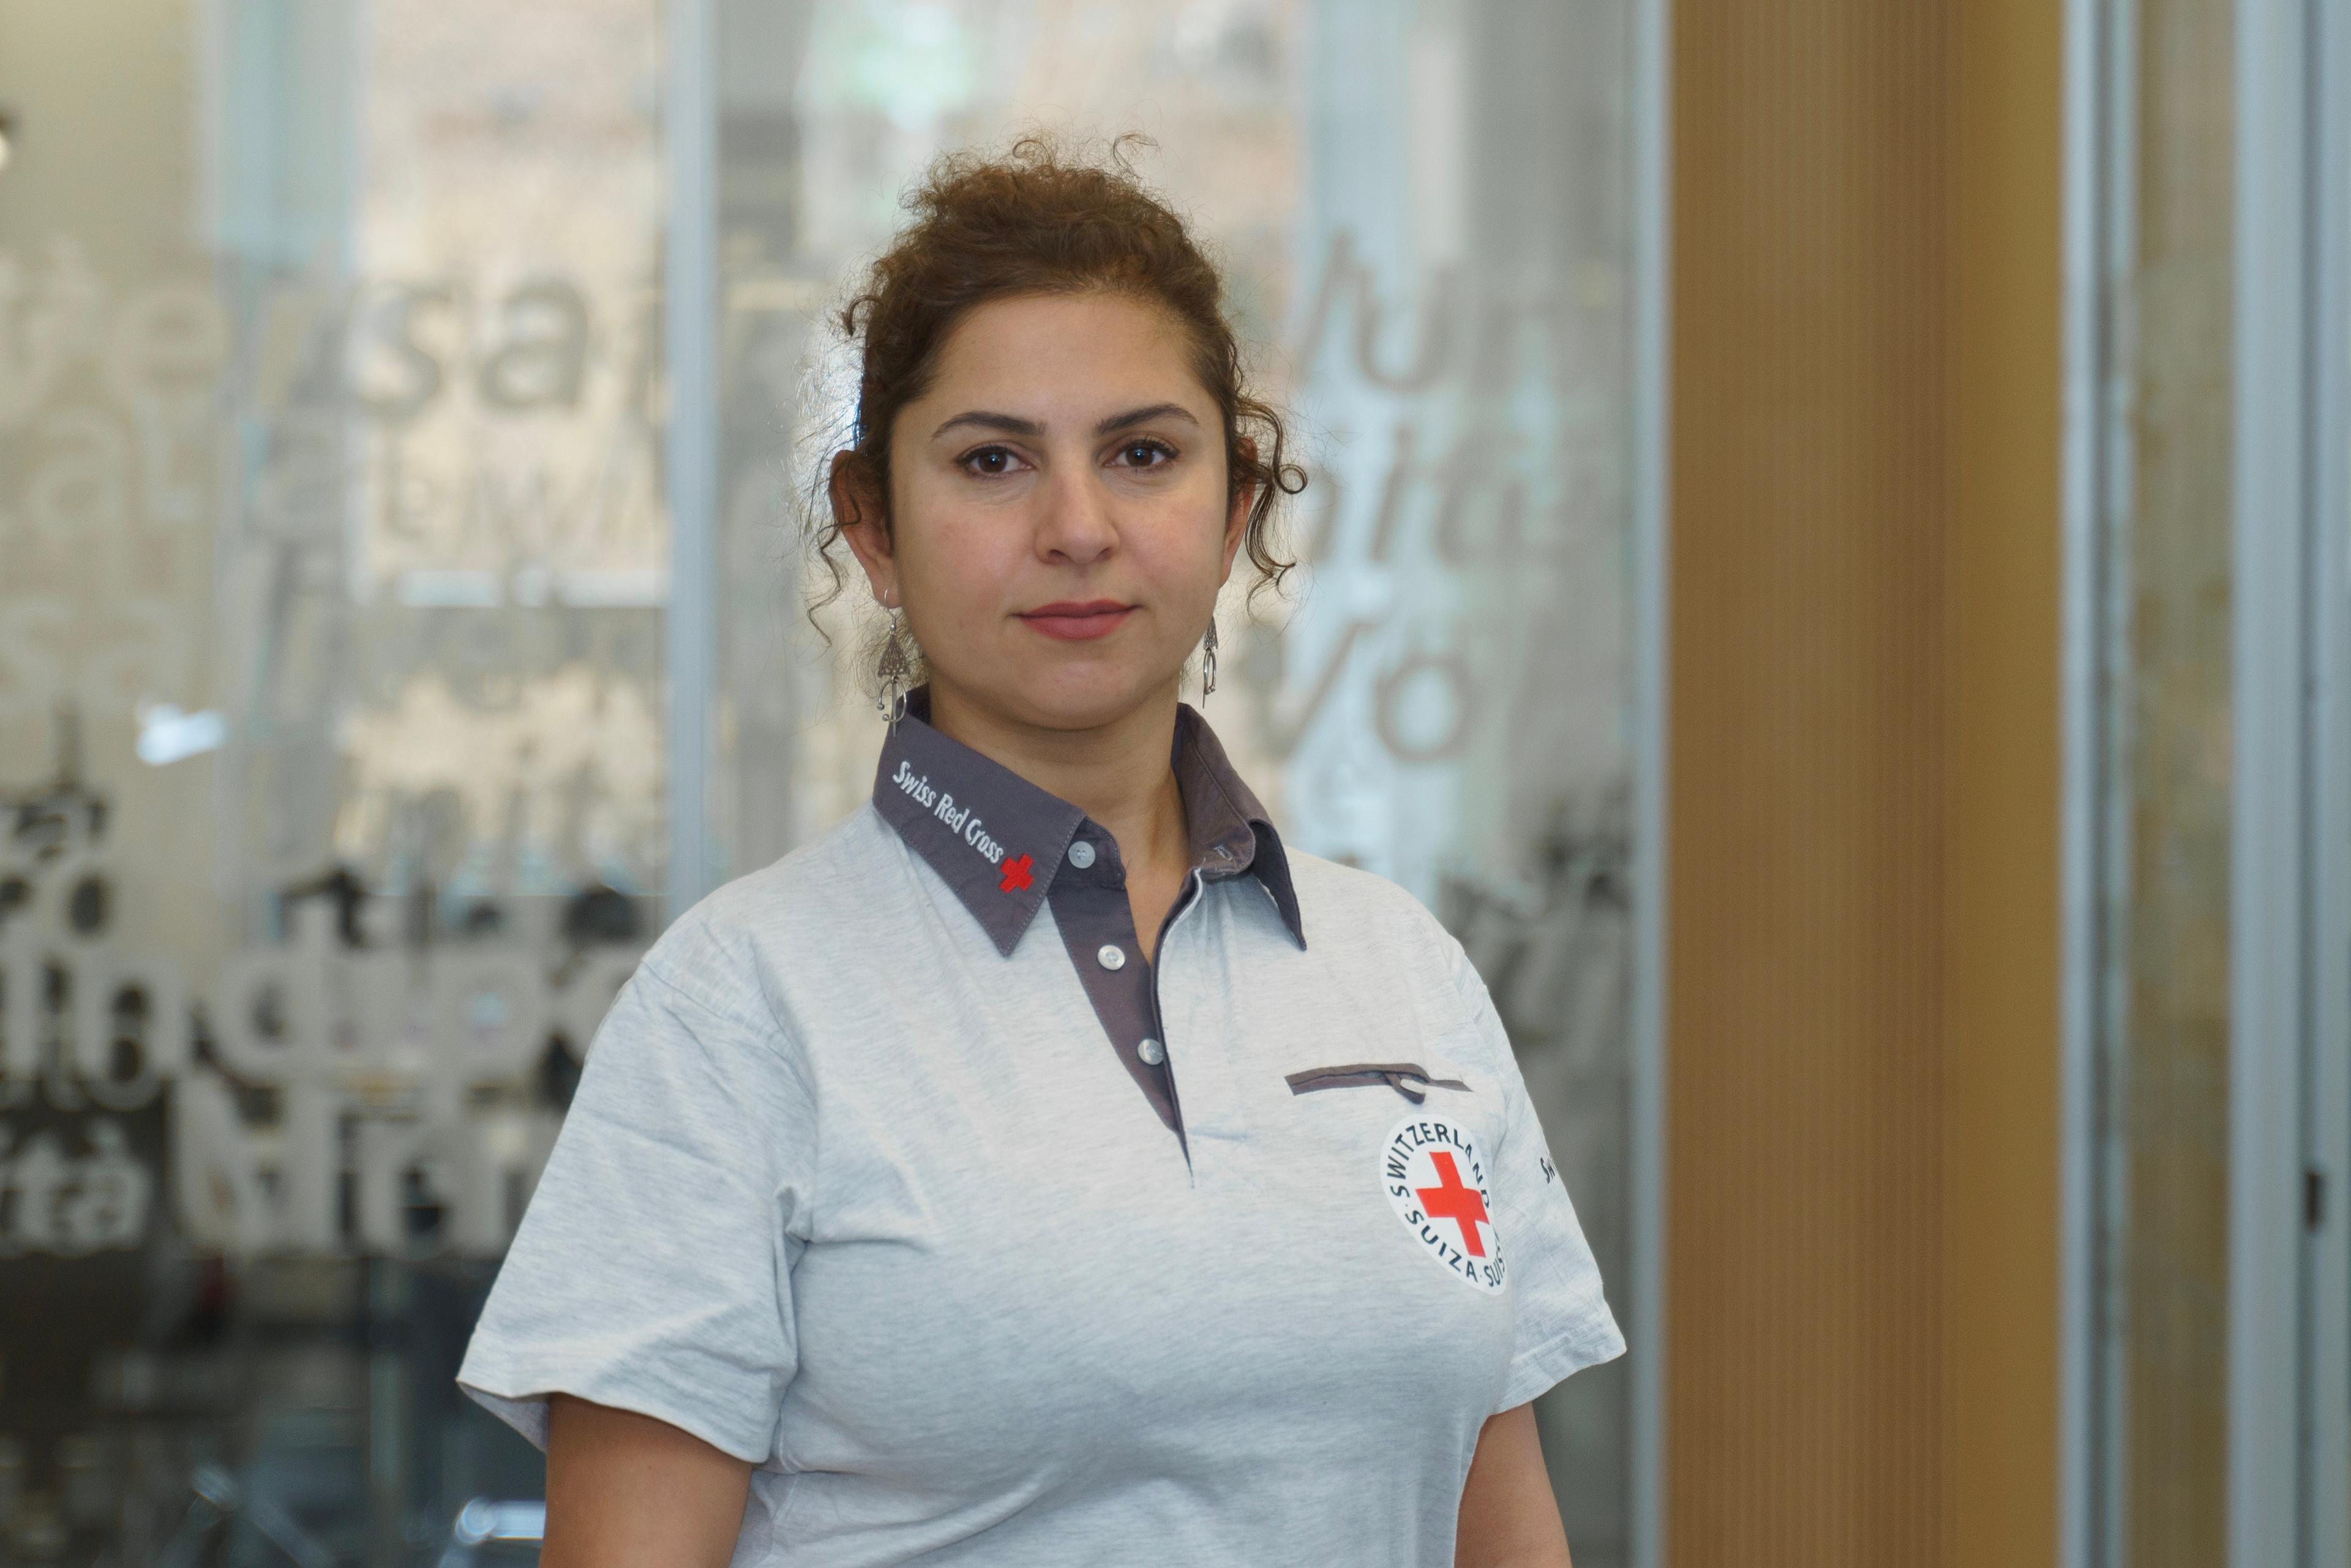 Eine Frau mit zusammen gebunden braun-rötlichen Haaren blickt direkt in die Kamera. Sie trägt ein graues Polo-Shirt mit der Aufschrift Swiss Red Cross. 